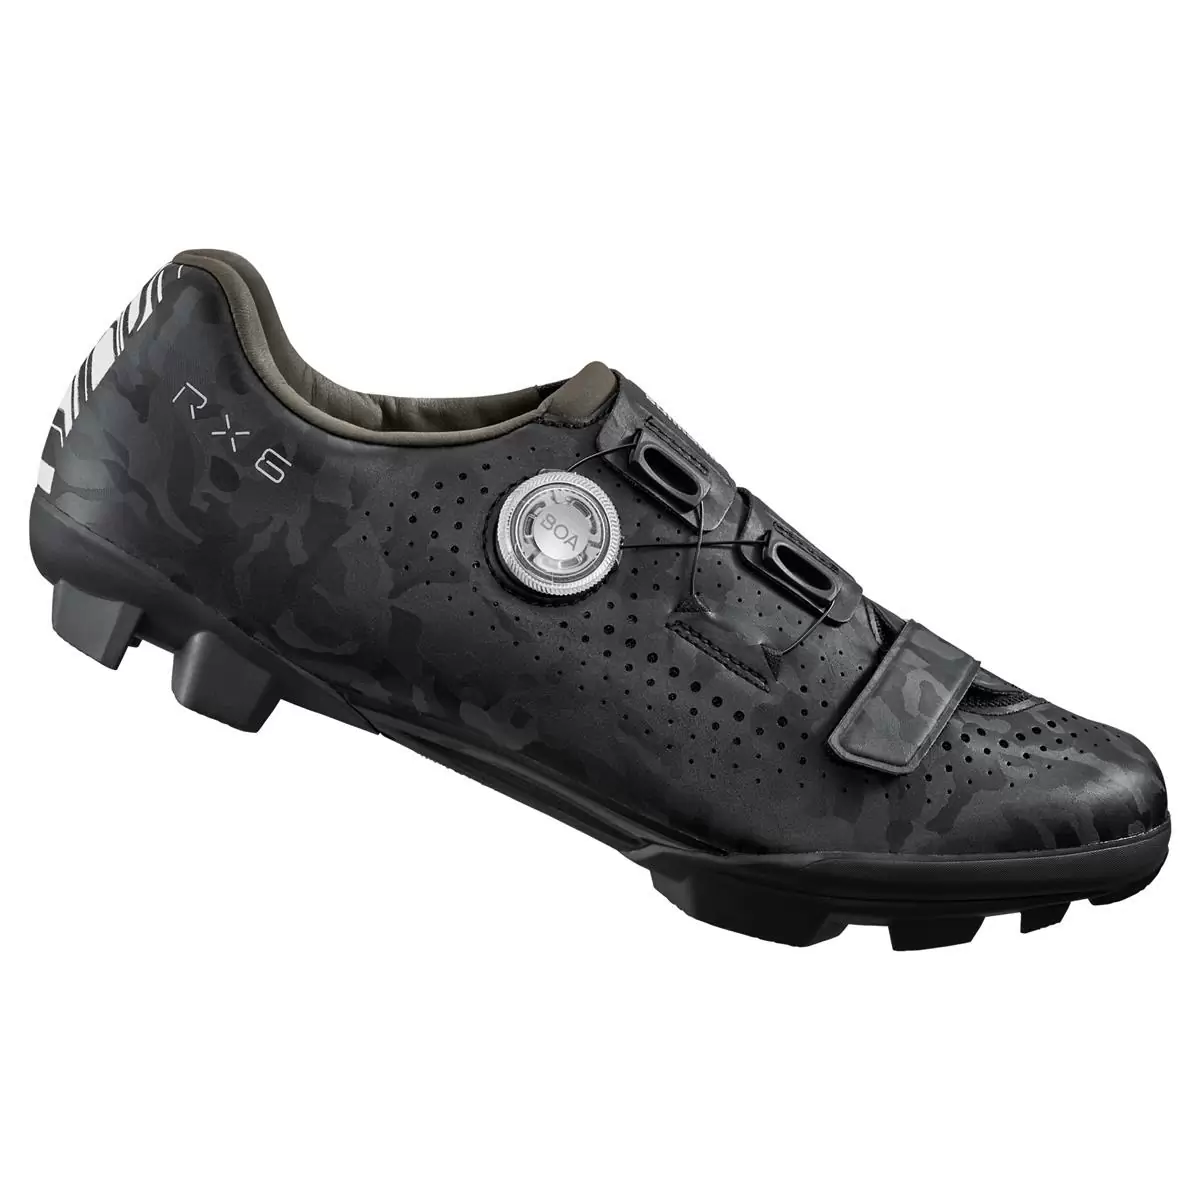 MTB / Gravel Shoes SH-RX600 RX6 Black Size 39 - image